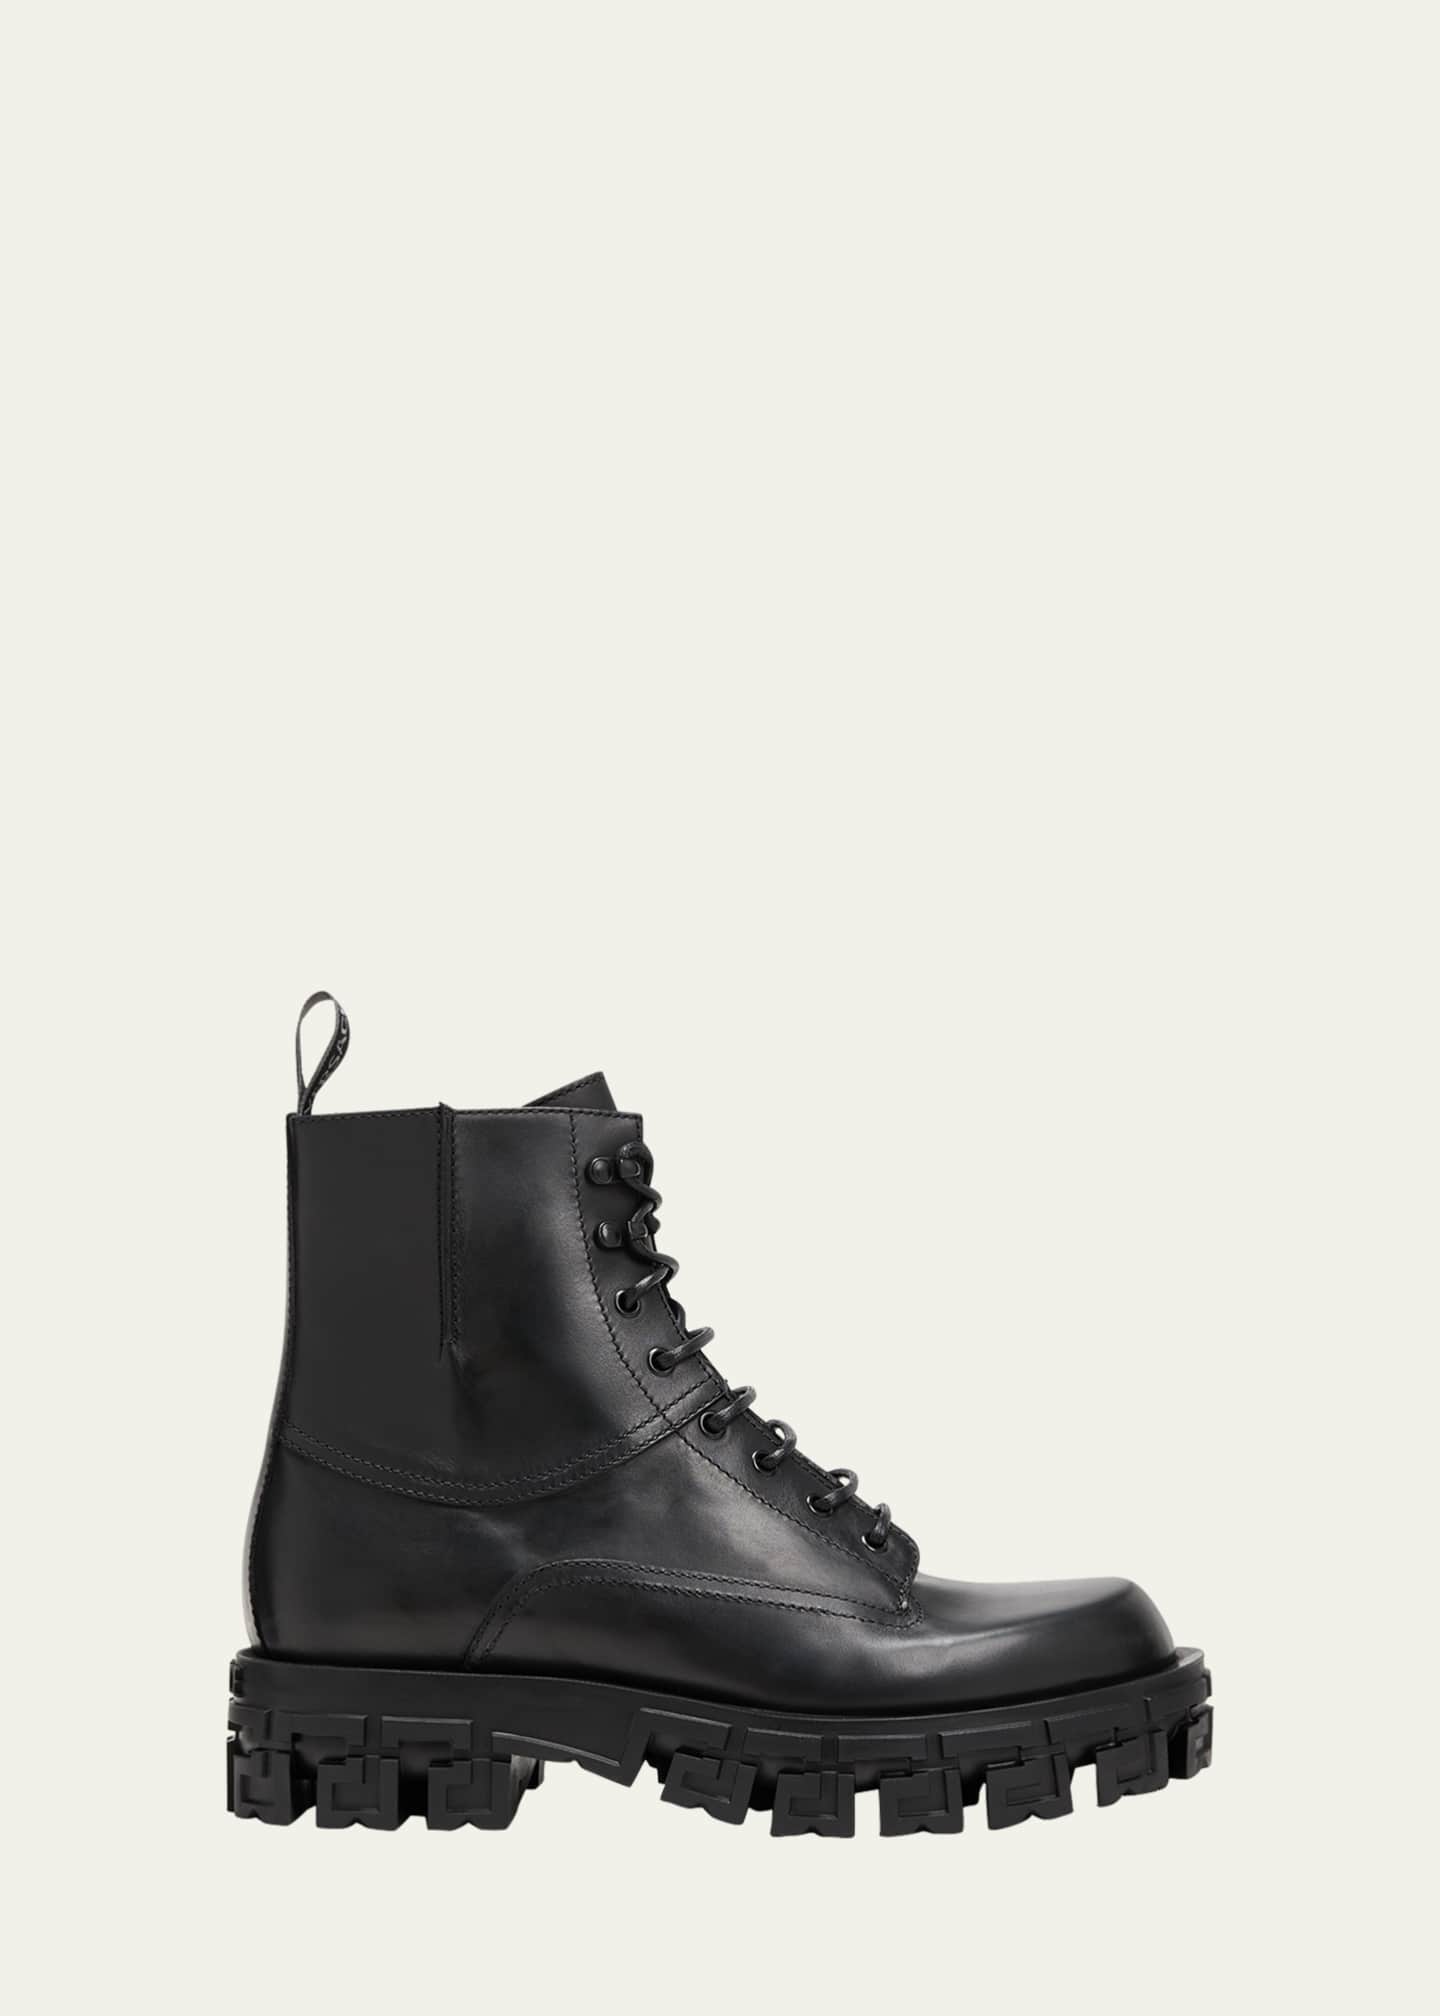 Versace Men's Greca-Sole Leather Combat Boots - Bergdorf Goodman